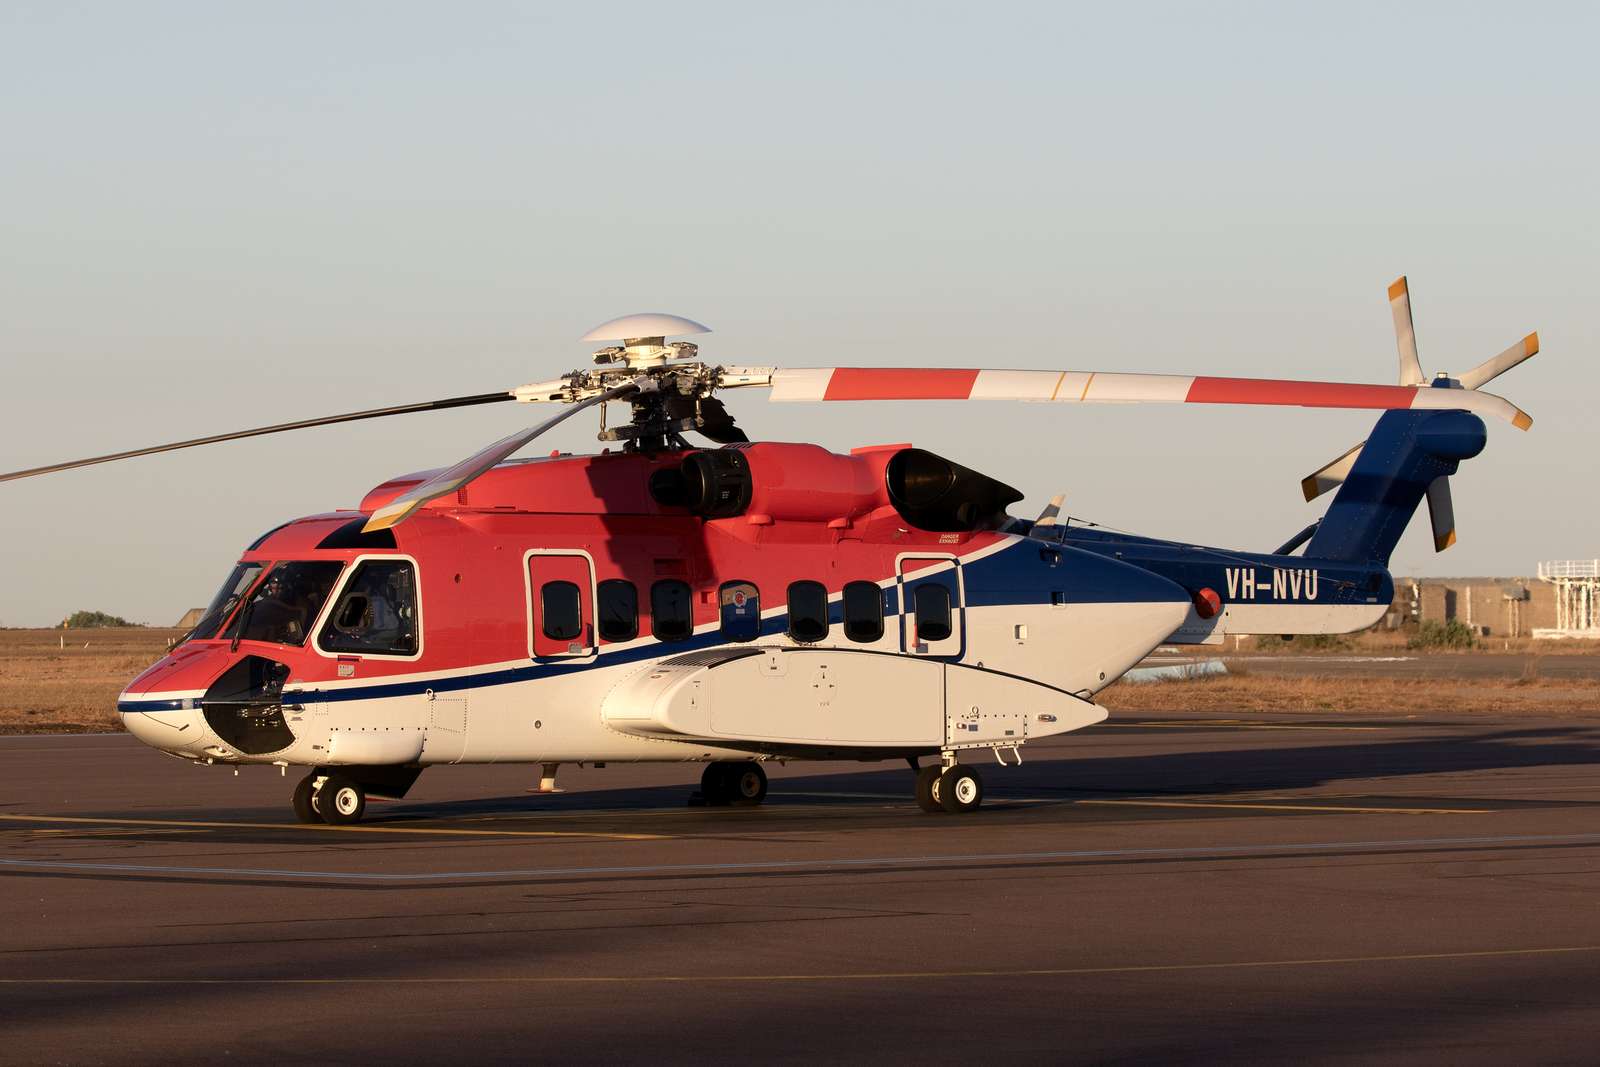 поездка на вертолете пазл онлайн из фото